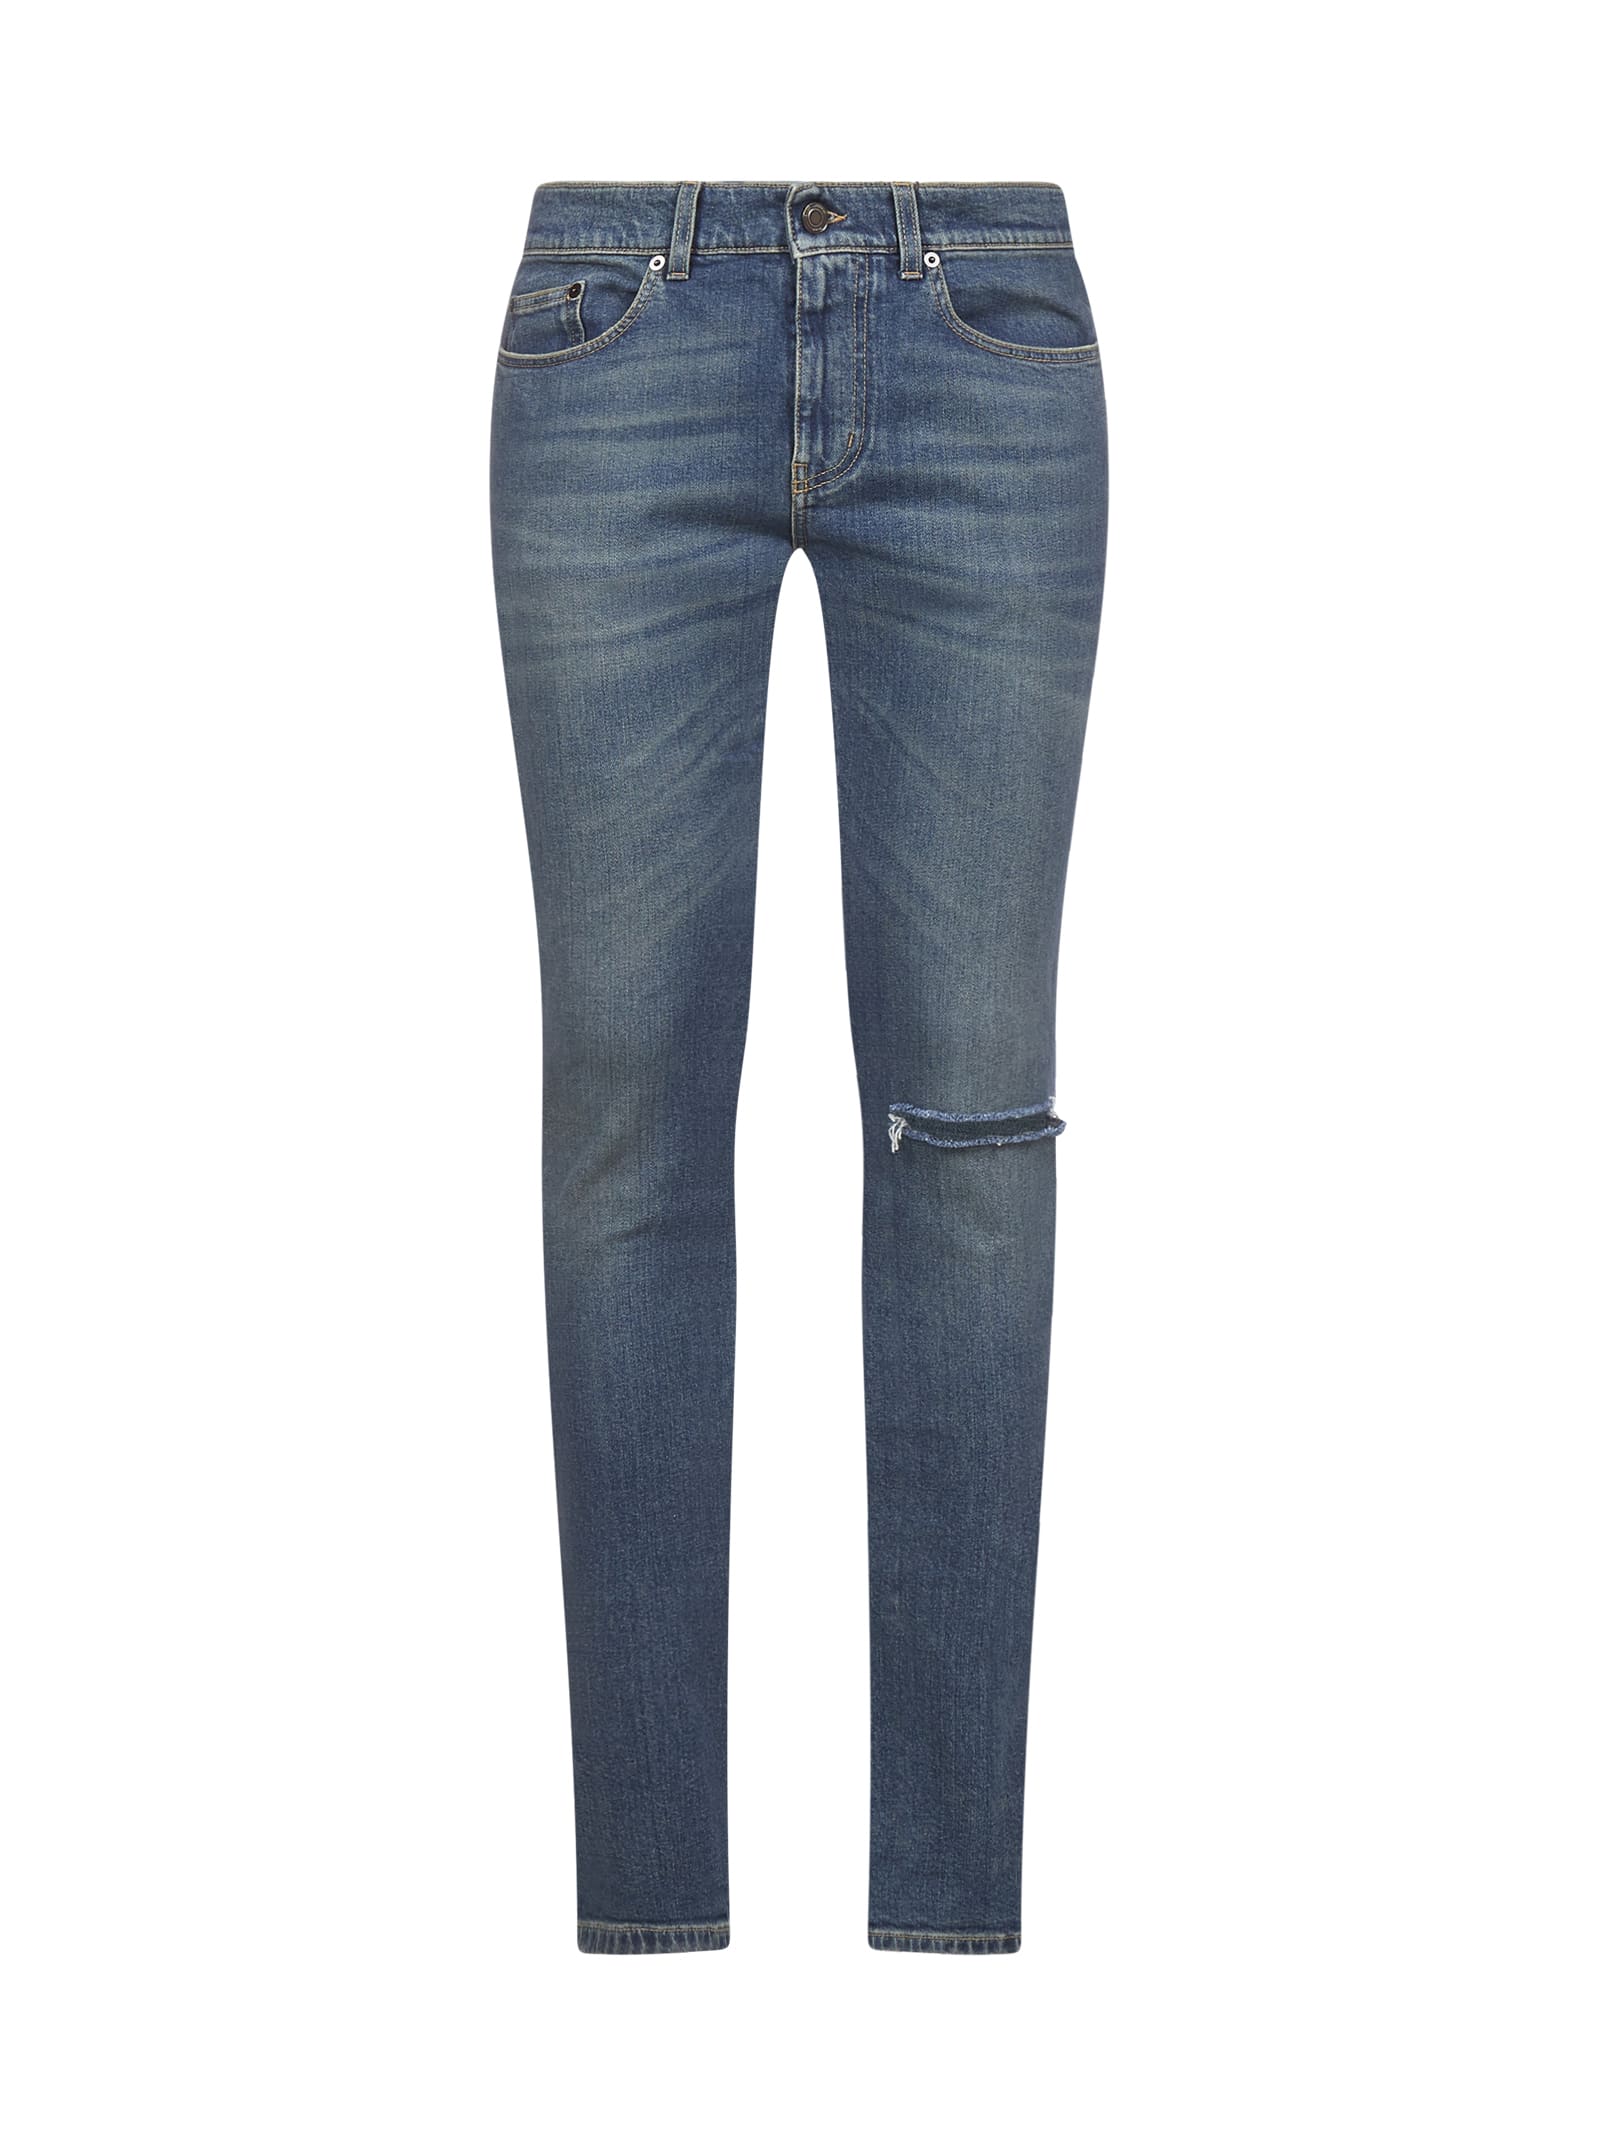 Saint Laurent Jeans In Deep Vintage Blue Modesens